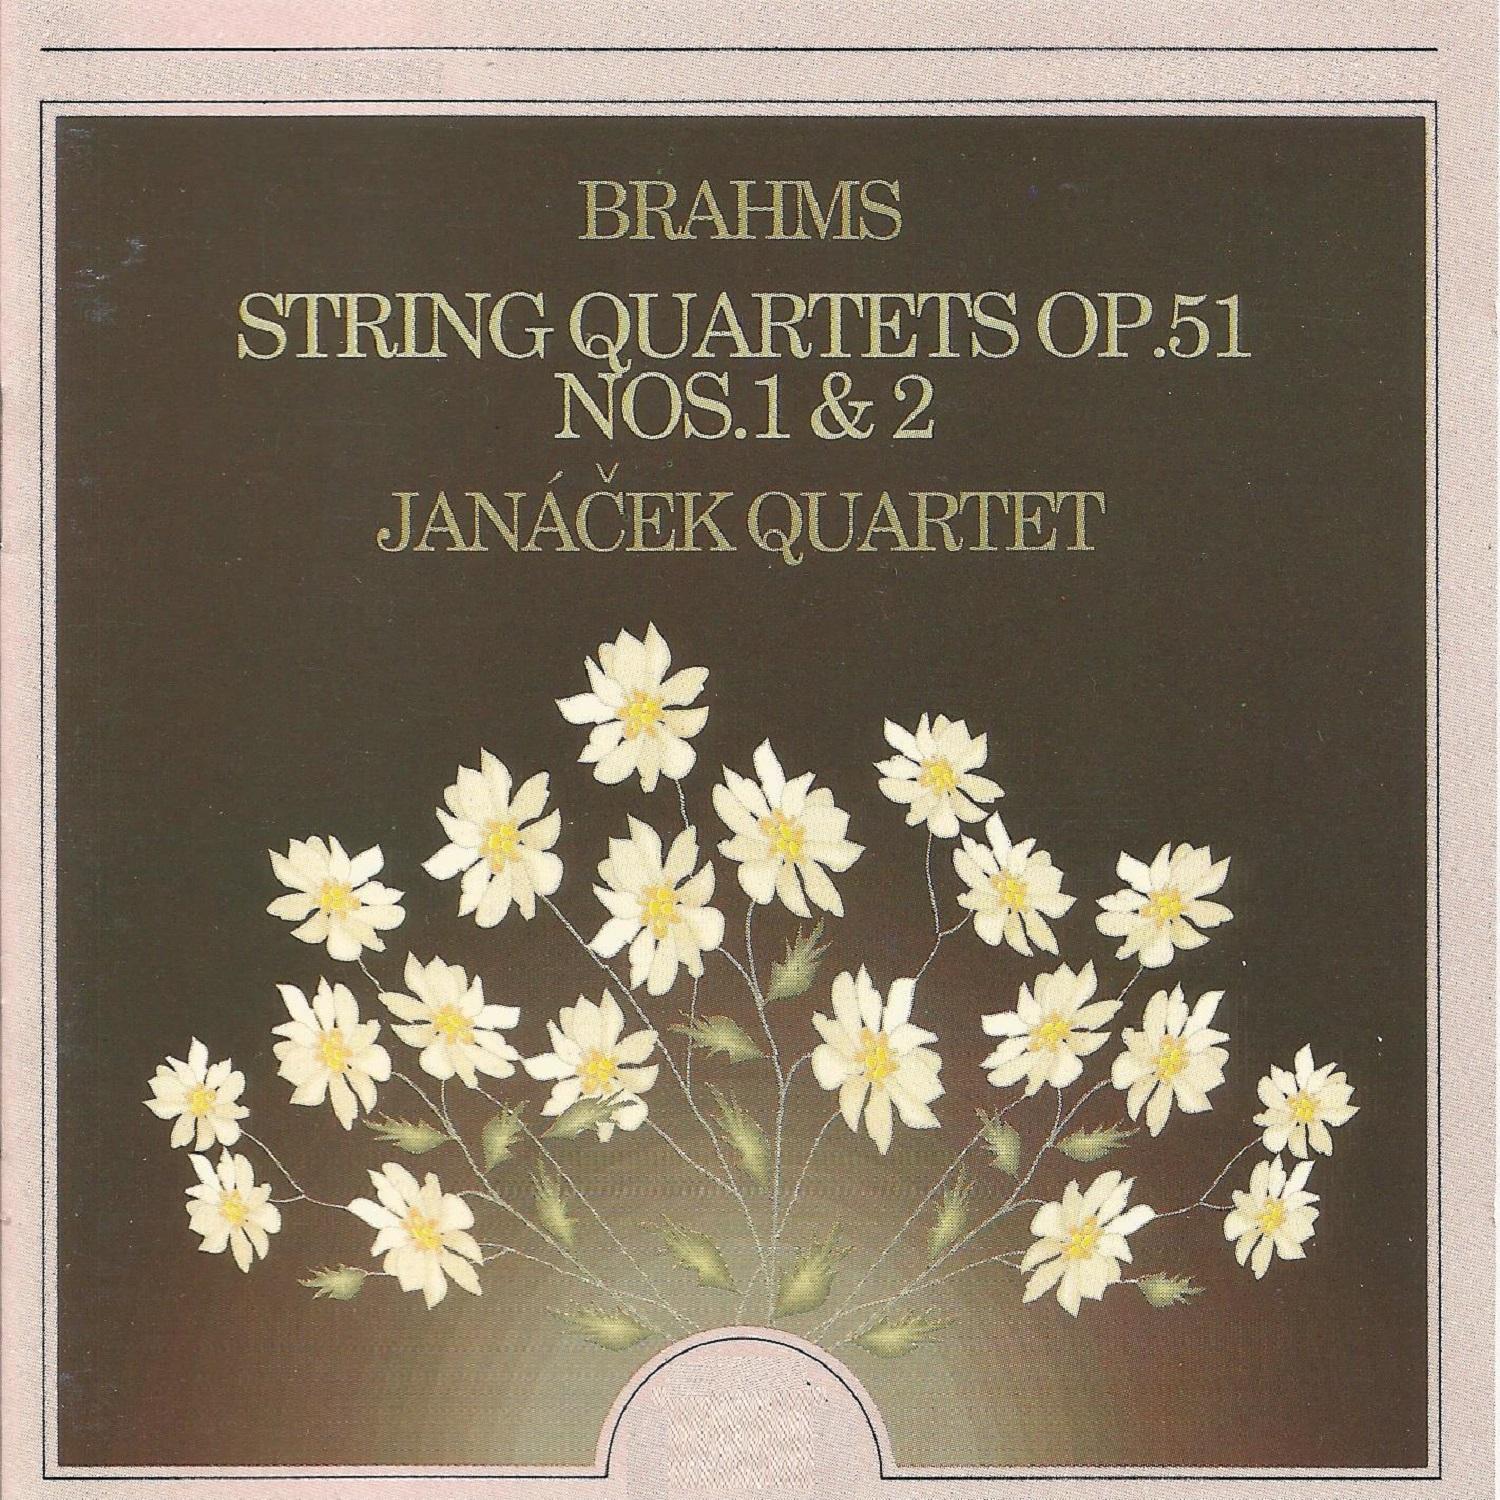 String Quartet No. 2 in A Minor, Op. 51 No. 2: I. Allegro non troppo